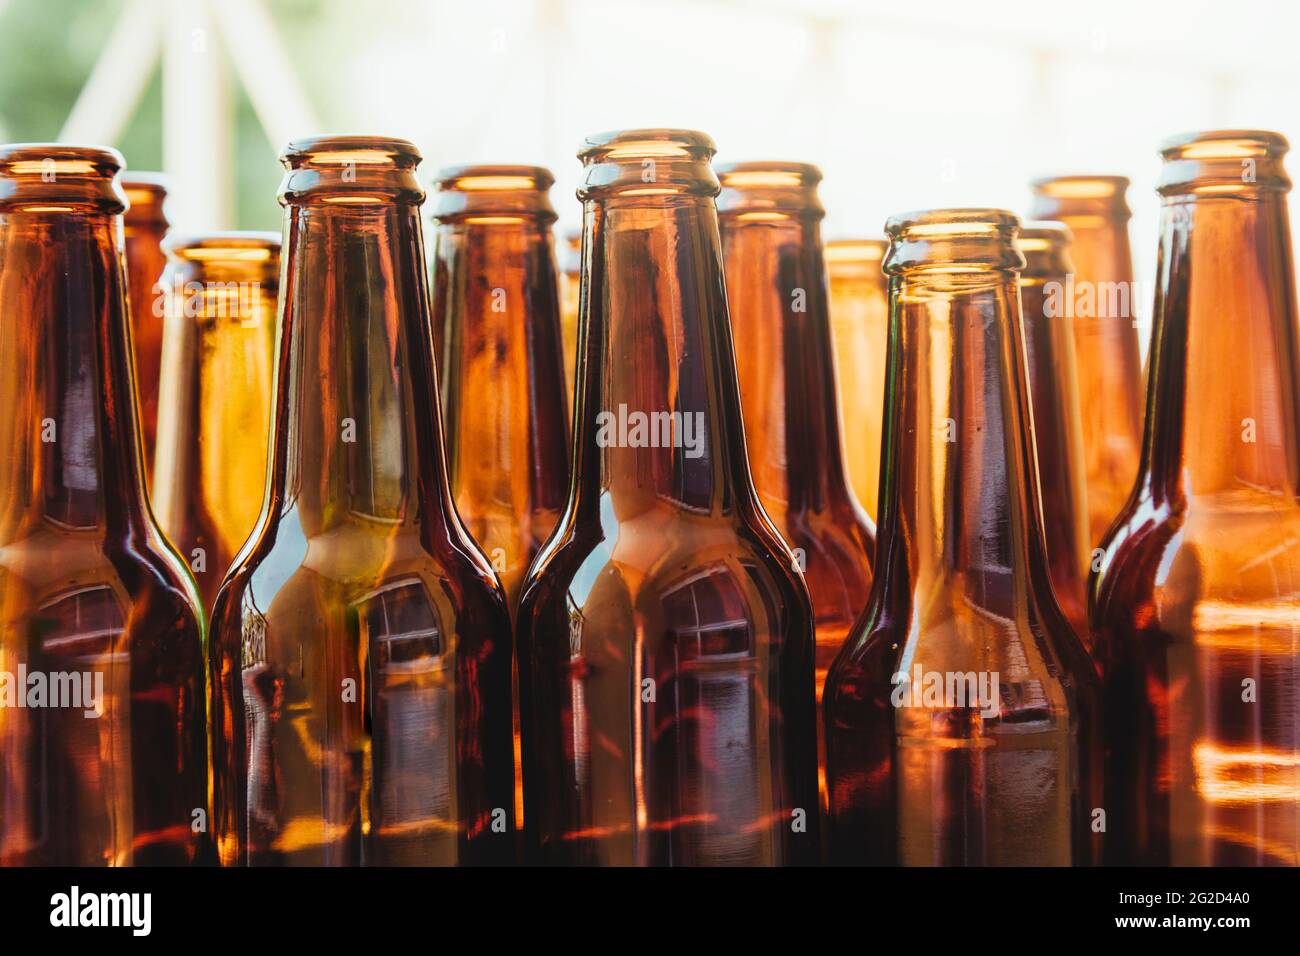 Varias botellas de vidrio marrón vistas desde un ángulo bajo. Una gran cantidad de luz entra detrás de las botellas. Foto de stock